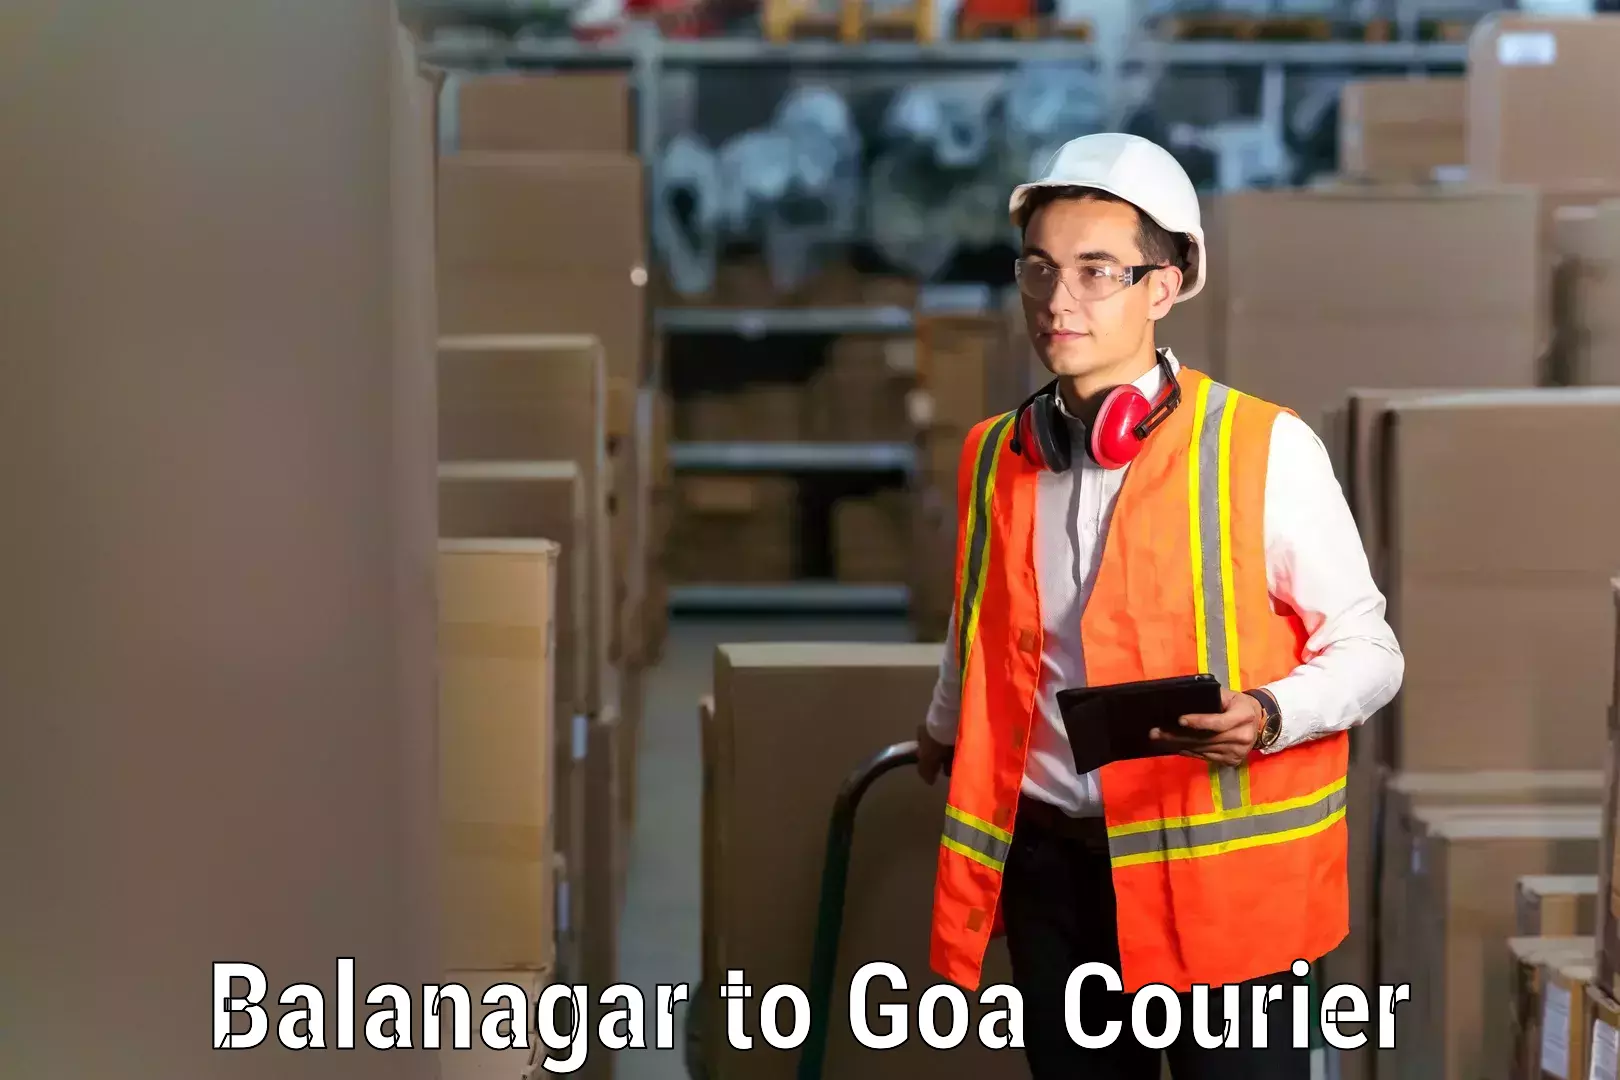 Smooth relocation services Balanagar to Goa